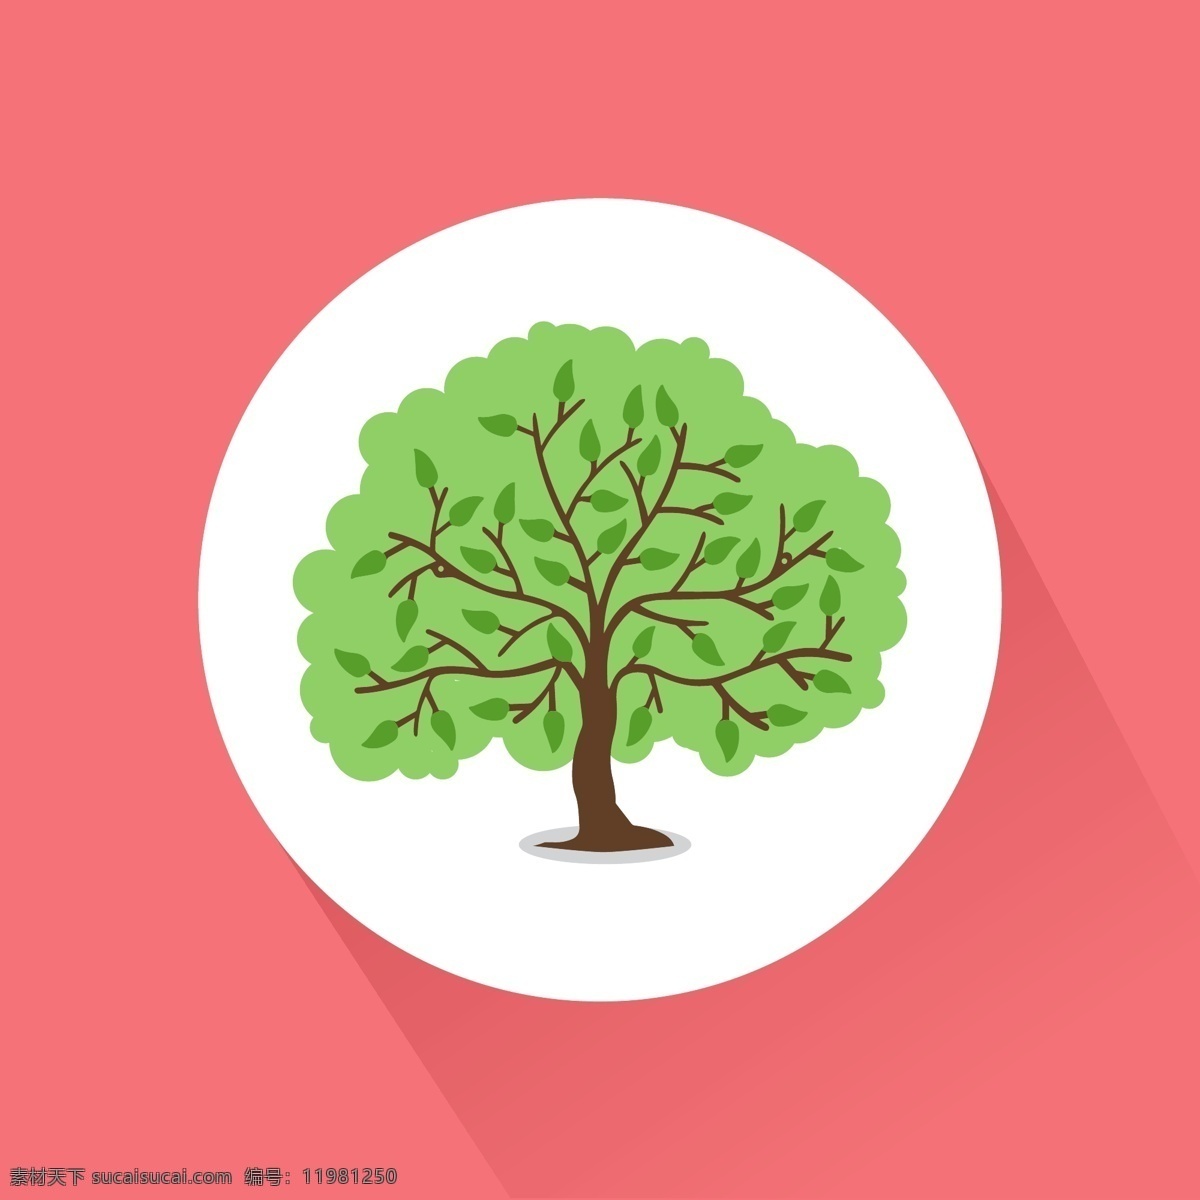 绿色的树图 树 标签 按钮 自然 绿色 平坦 森林 生态 环境 插图 树叶 粉色